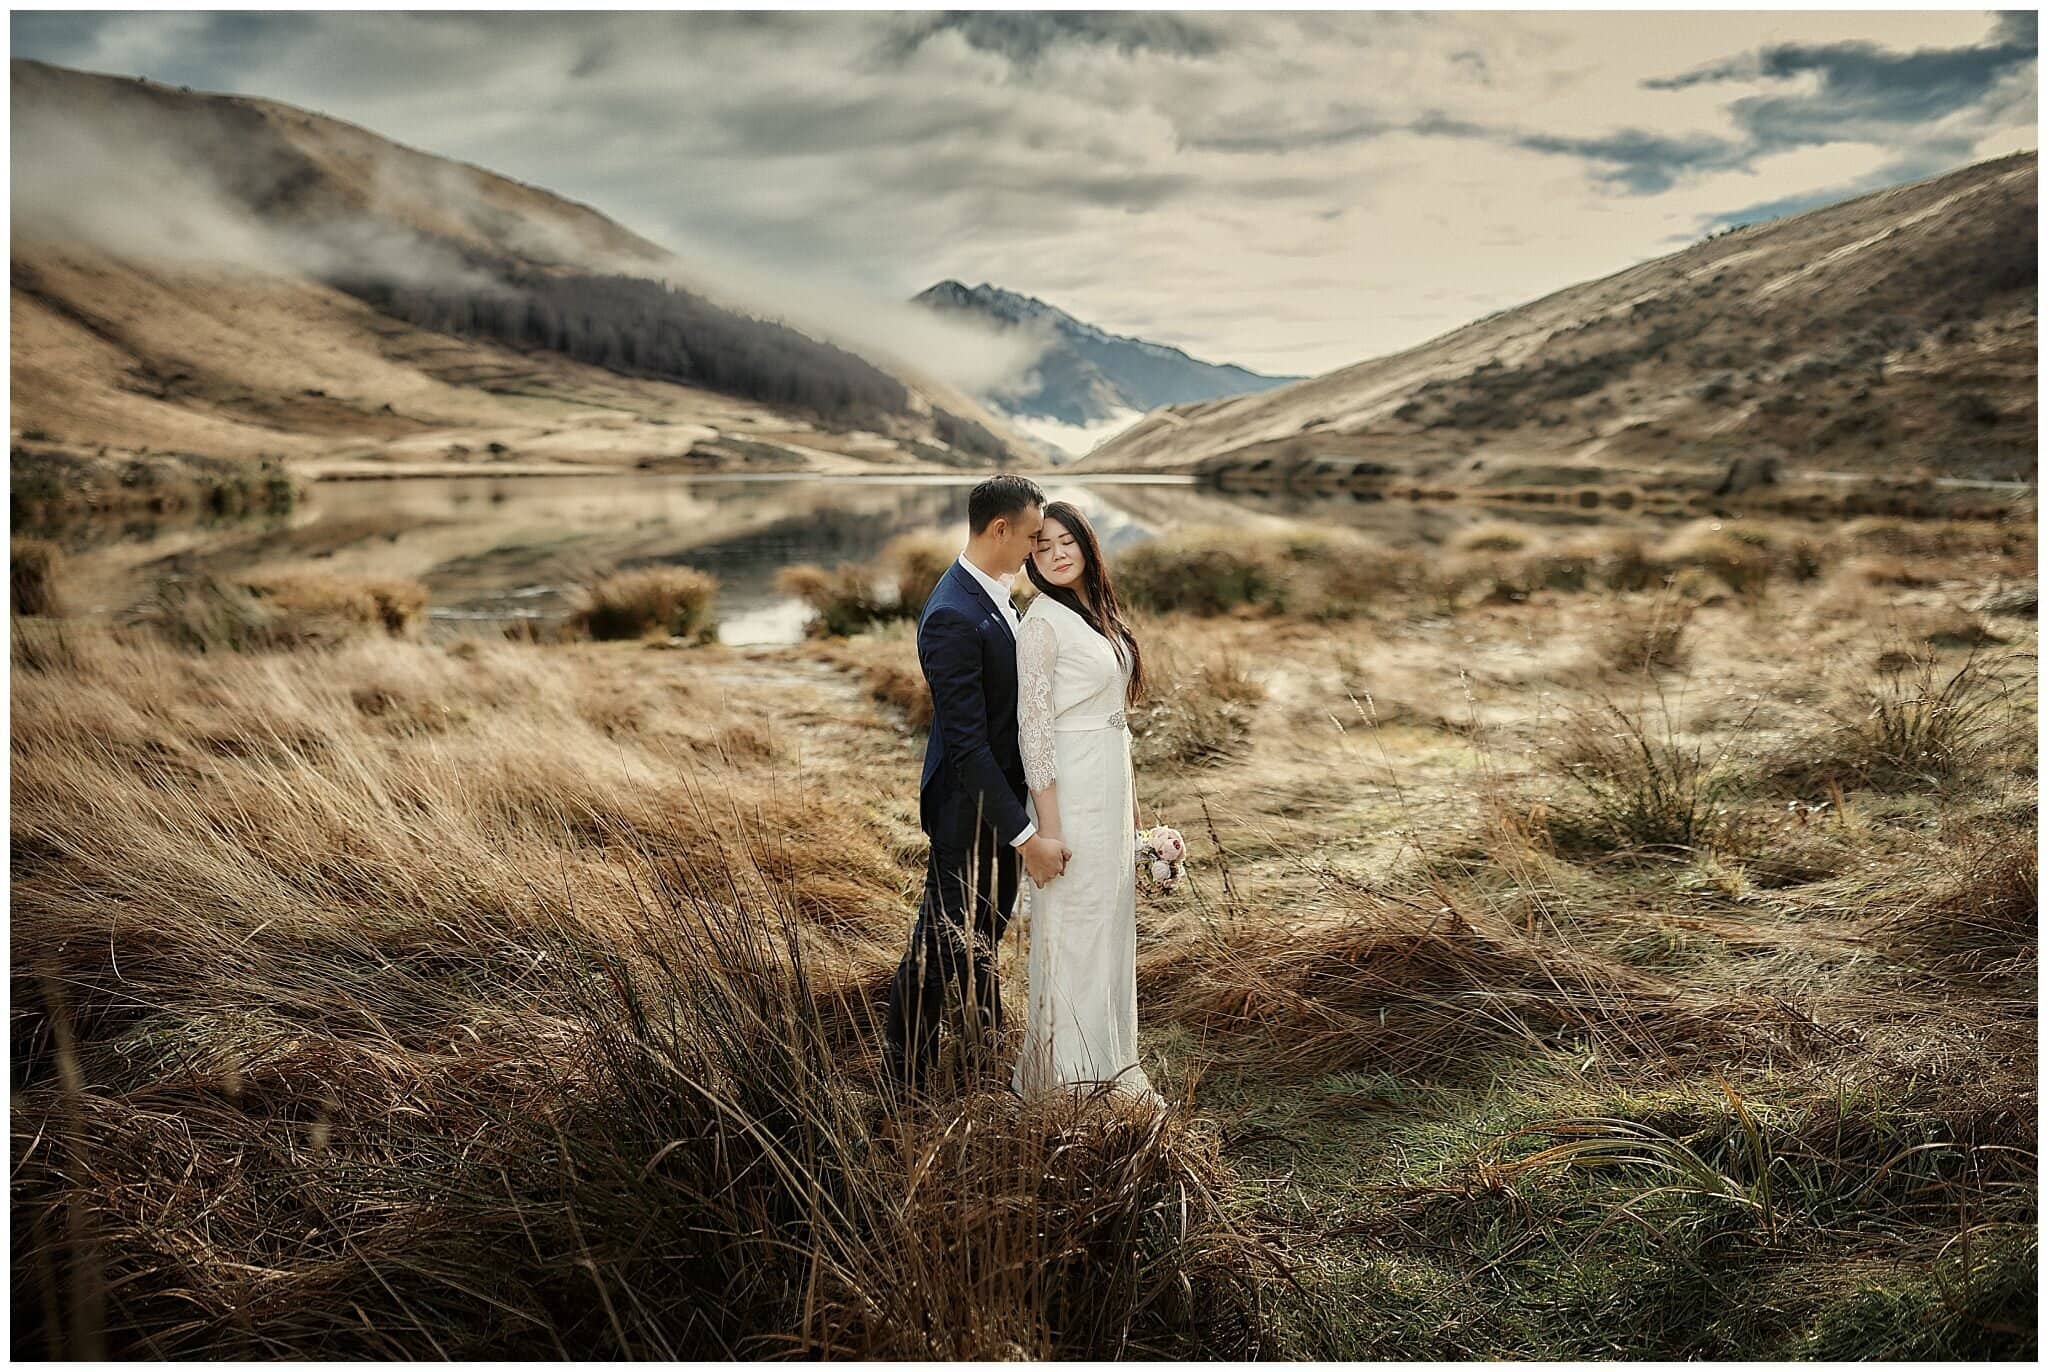 Catherine & Terrence' Queenstown NZ Pre-Wedding Shoot